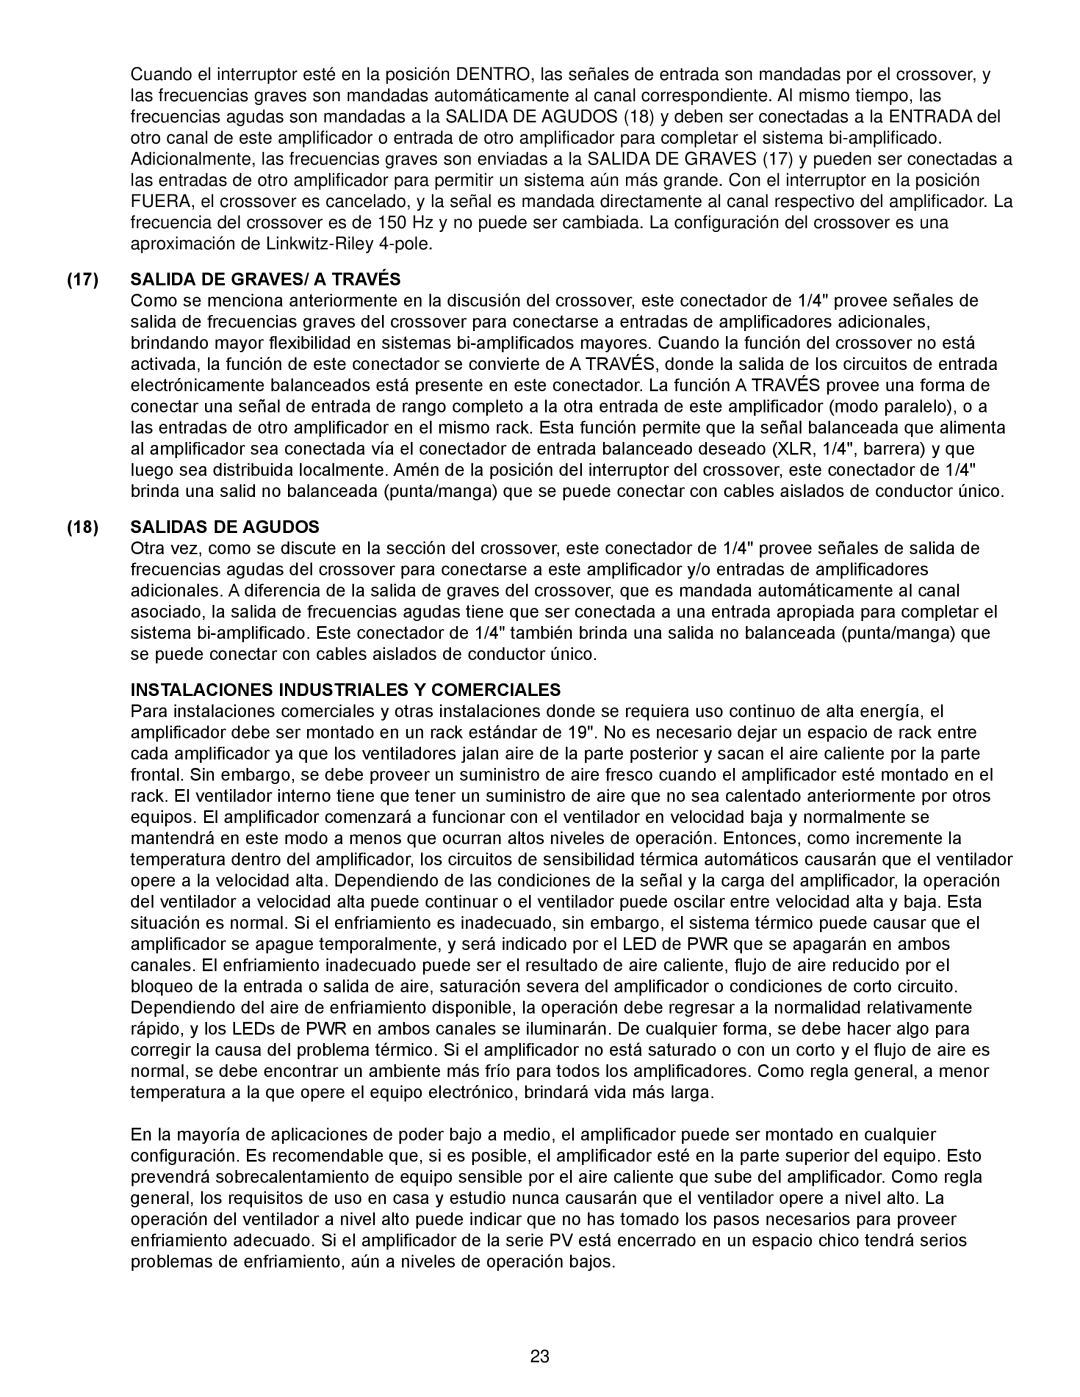 Peavey PV Series manual 17SALIDA DE GRAVES/ A TRAVÉS, 18SALIDAS DE AGUDOS, Instalaciones Industriales Y Comerciales 